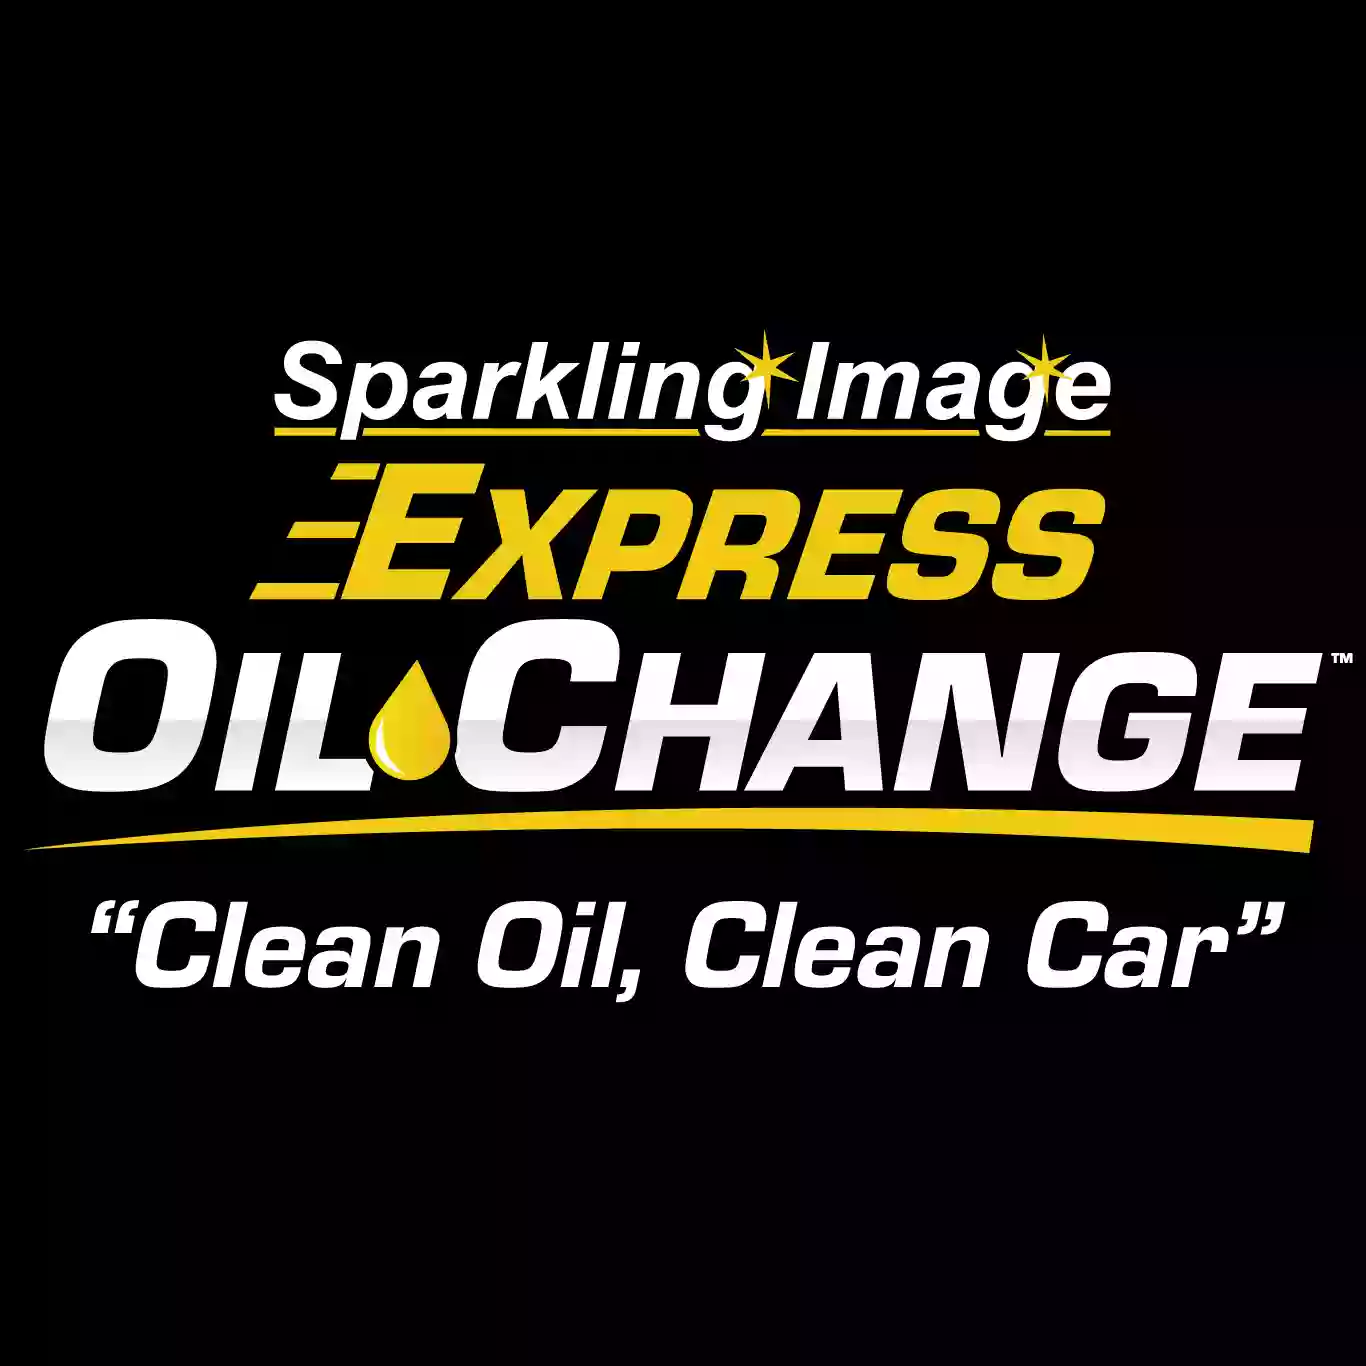 Sparkling Image Express Oil Change